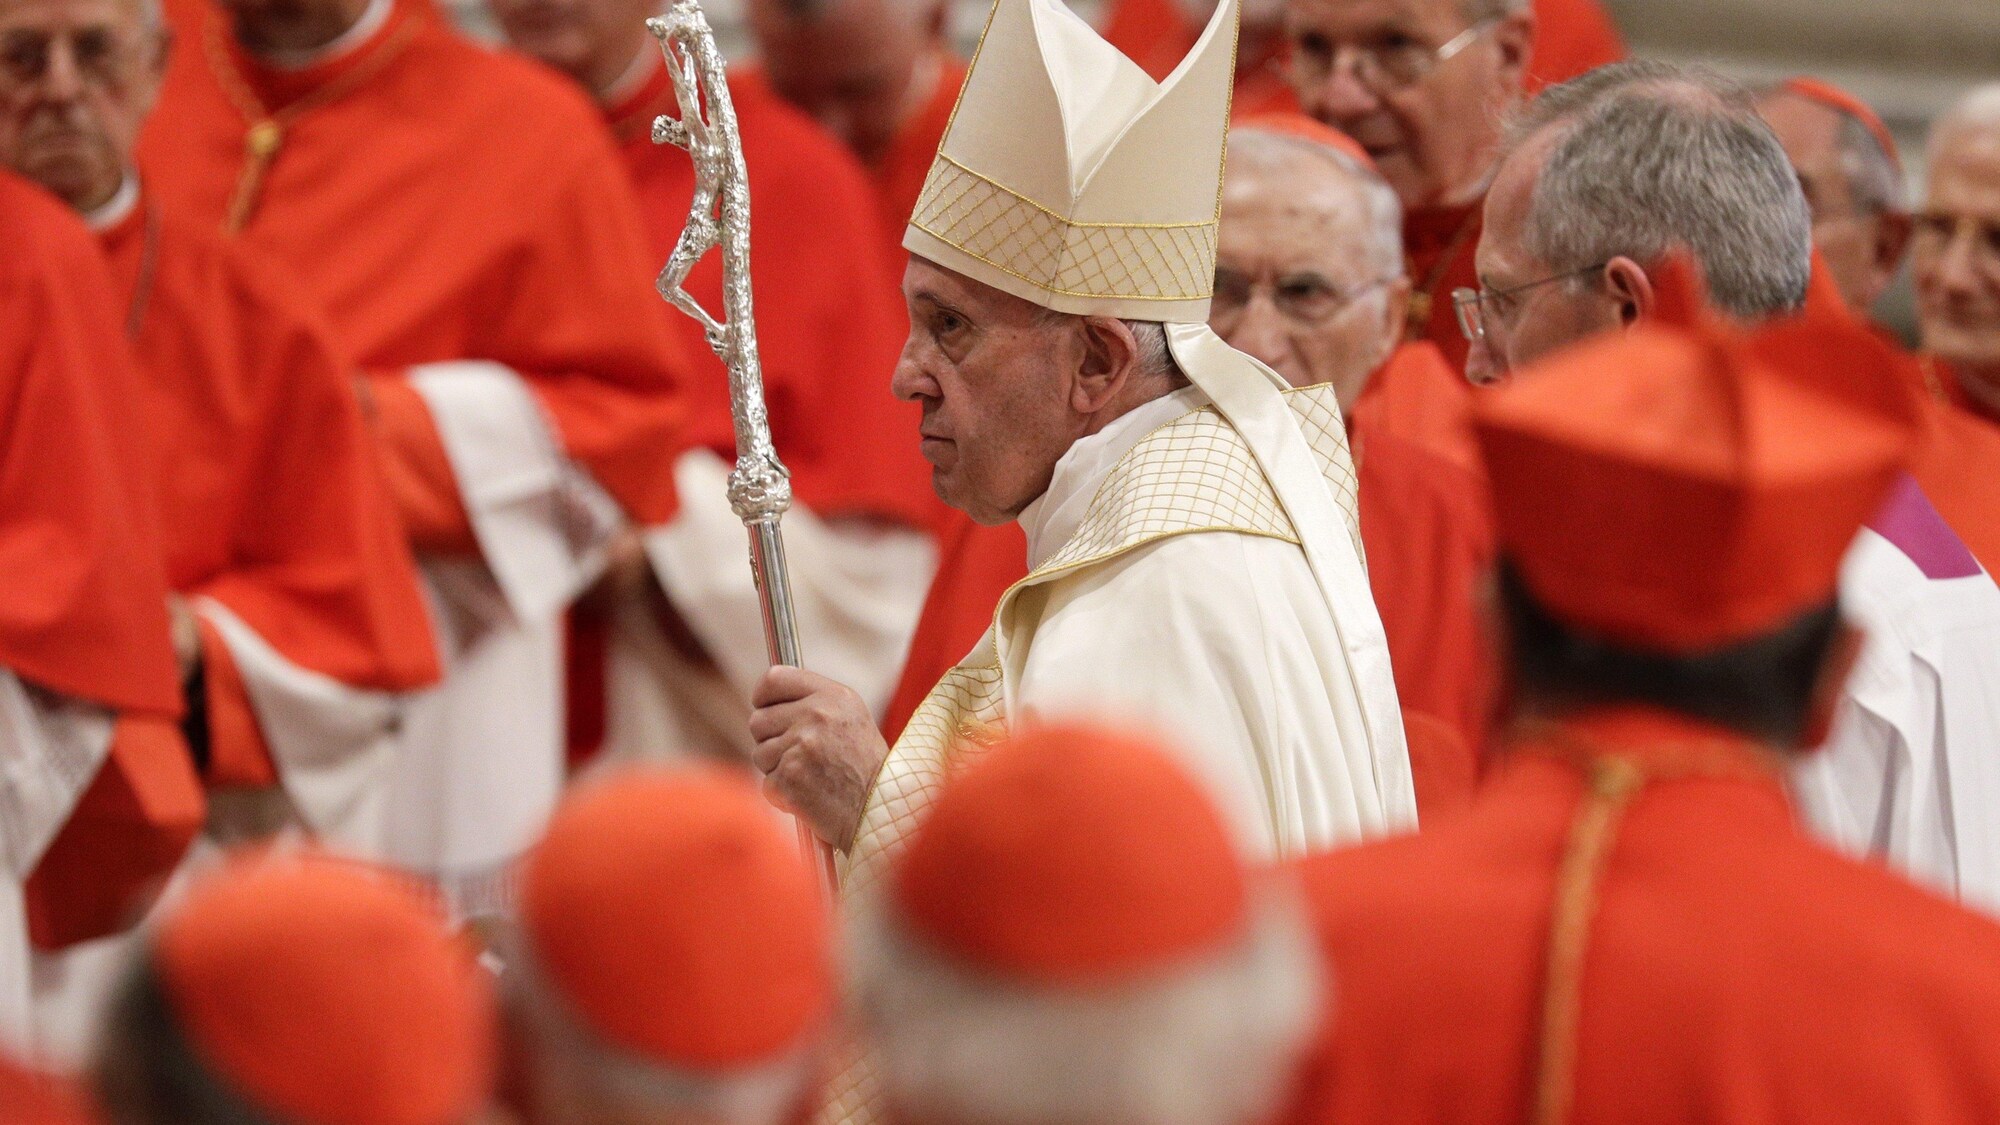 Le pape François porte sa crosse et sa mitre, en procession dans la basilique Saint-Pierre, entourés de cardinaux en tenue liturgique rouge et blanche.